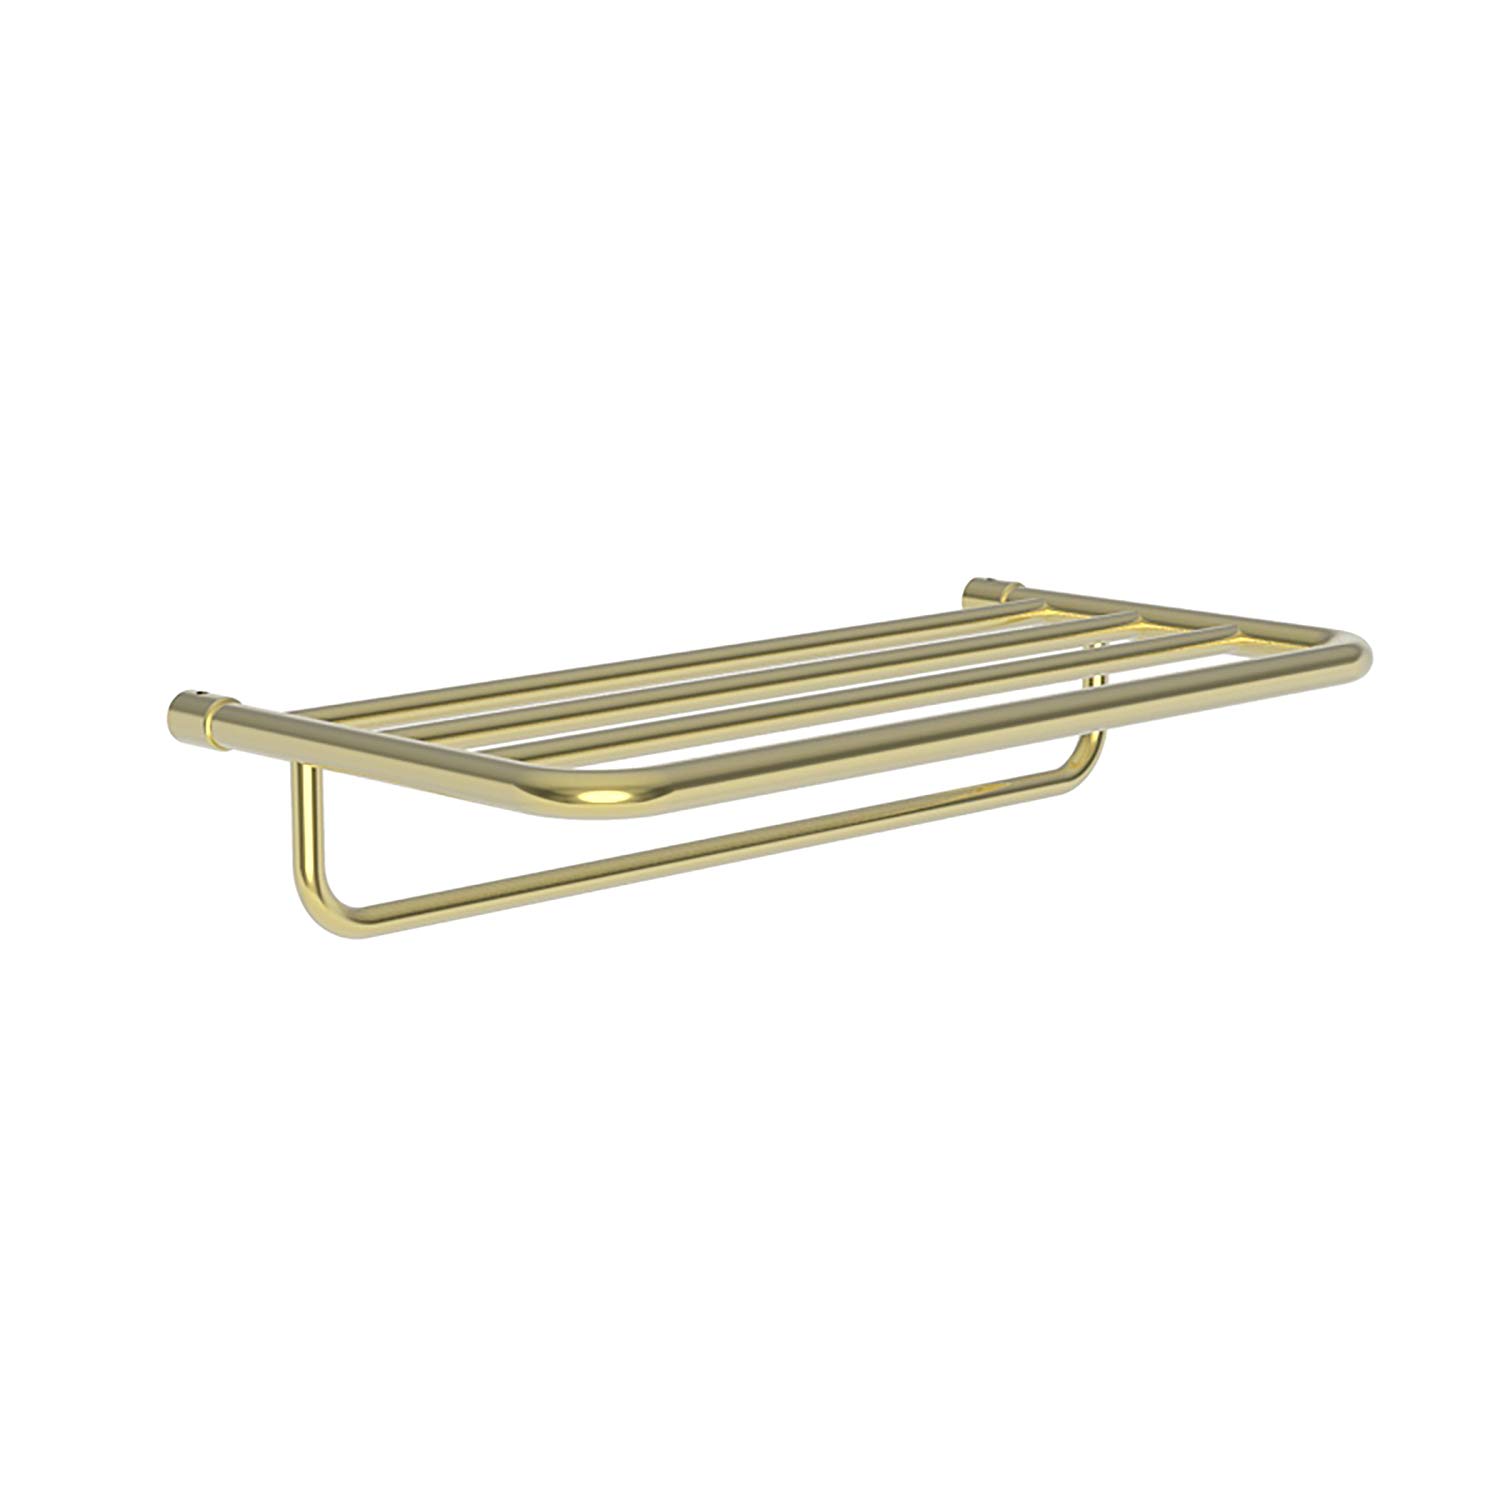 20" Hotel Towel Shelf Only w/Towel Bar in Polished Brass